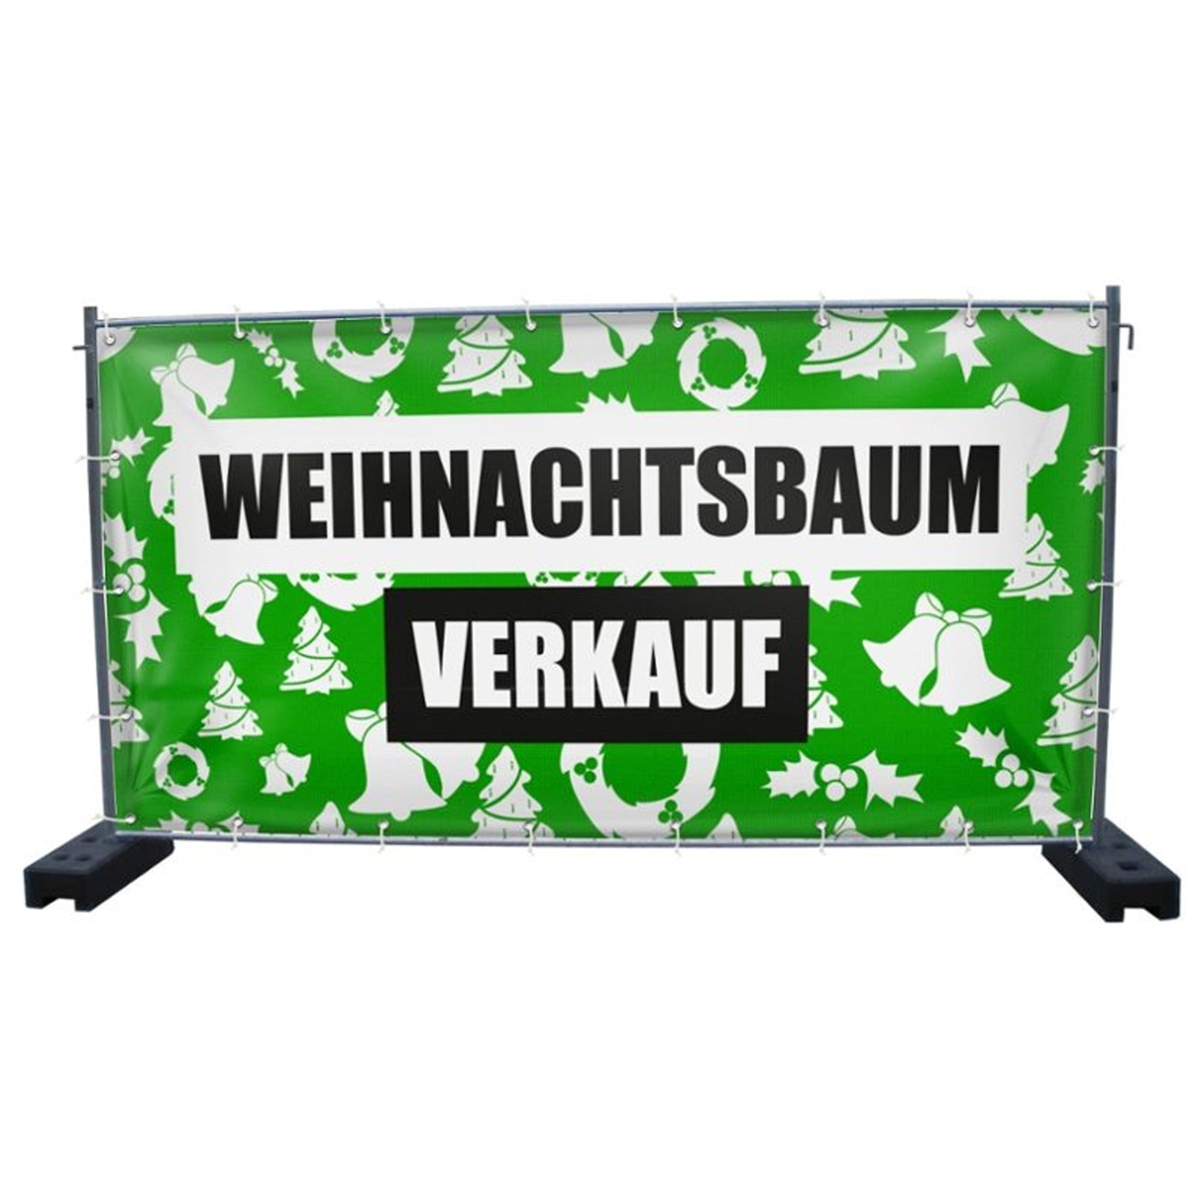 340 x 173 cm | Weihnachtsbaumverkauf Bauzaunbanner (2140)